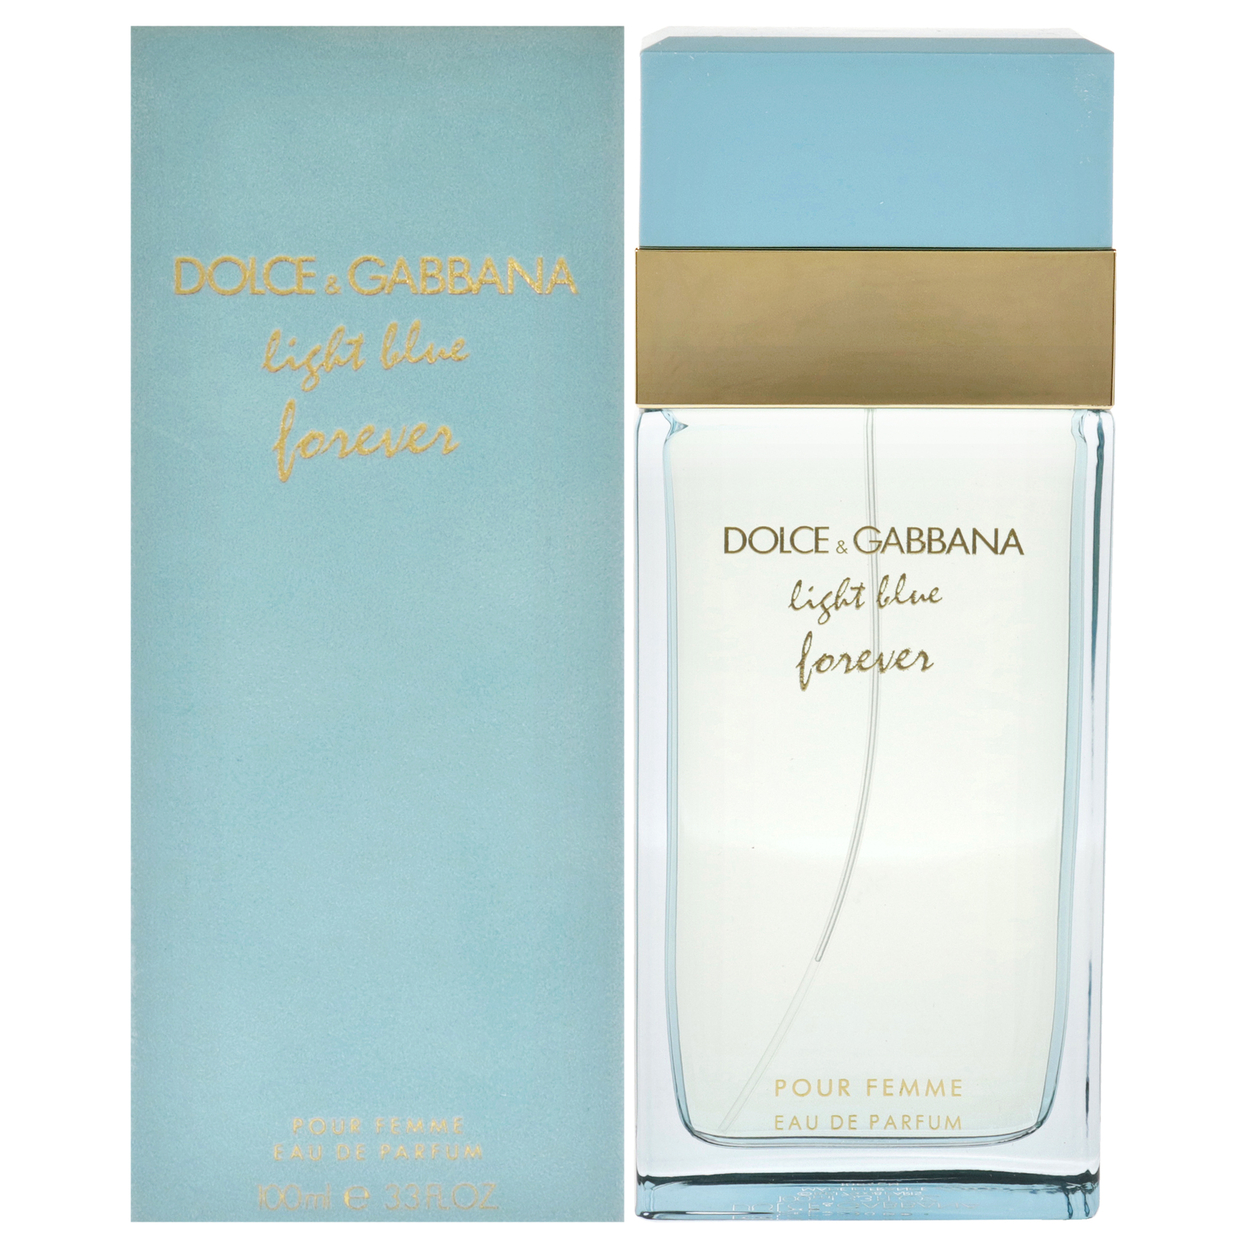 Dolce & Gabbana Women RETAIL Light Blue Forever 3.3 Oz